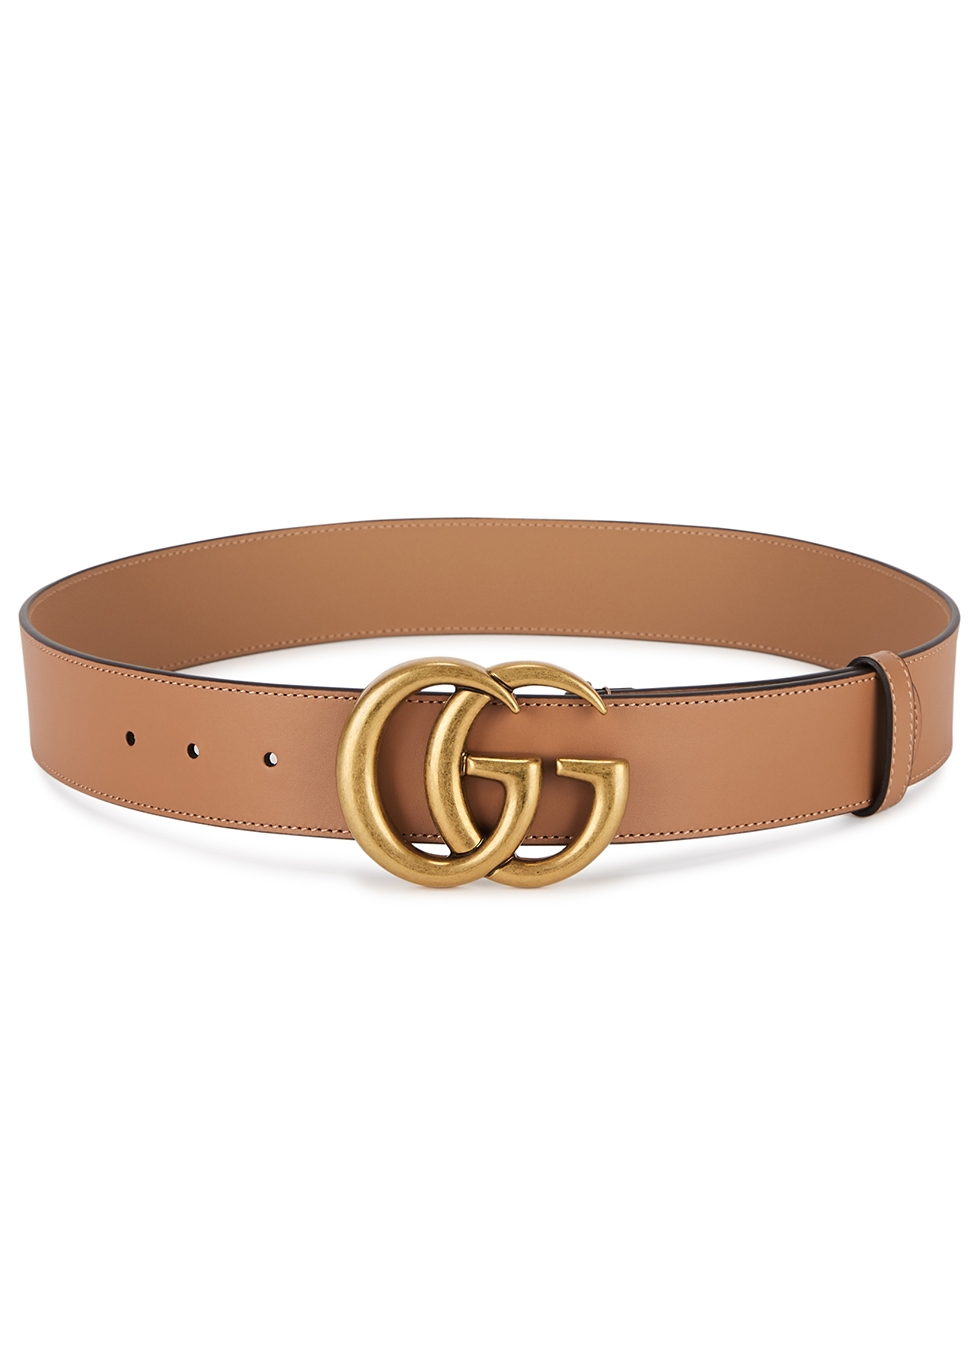 gg designer belt